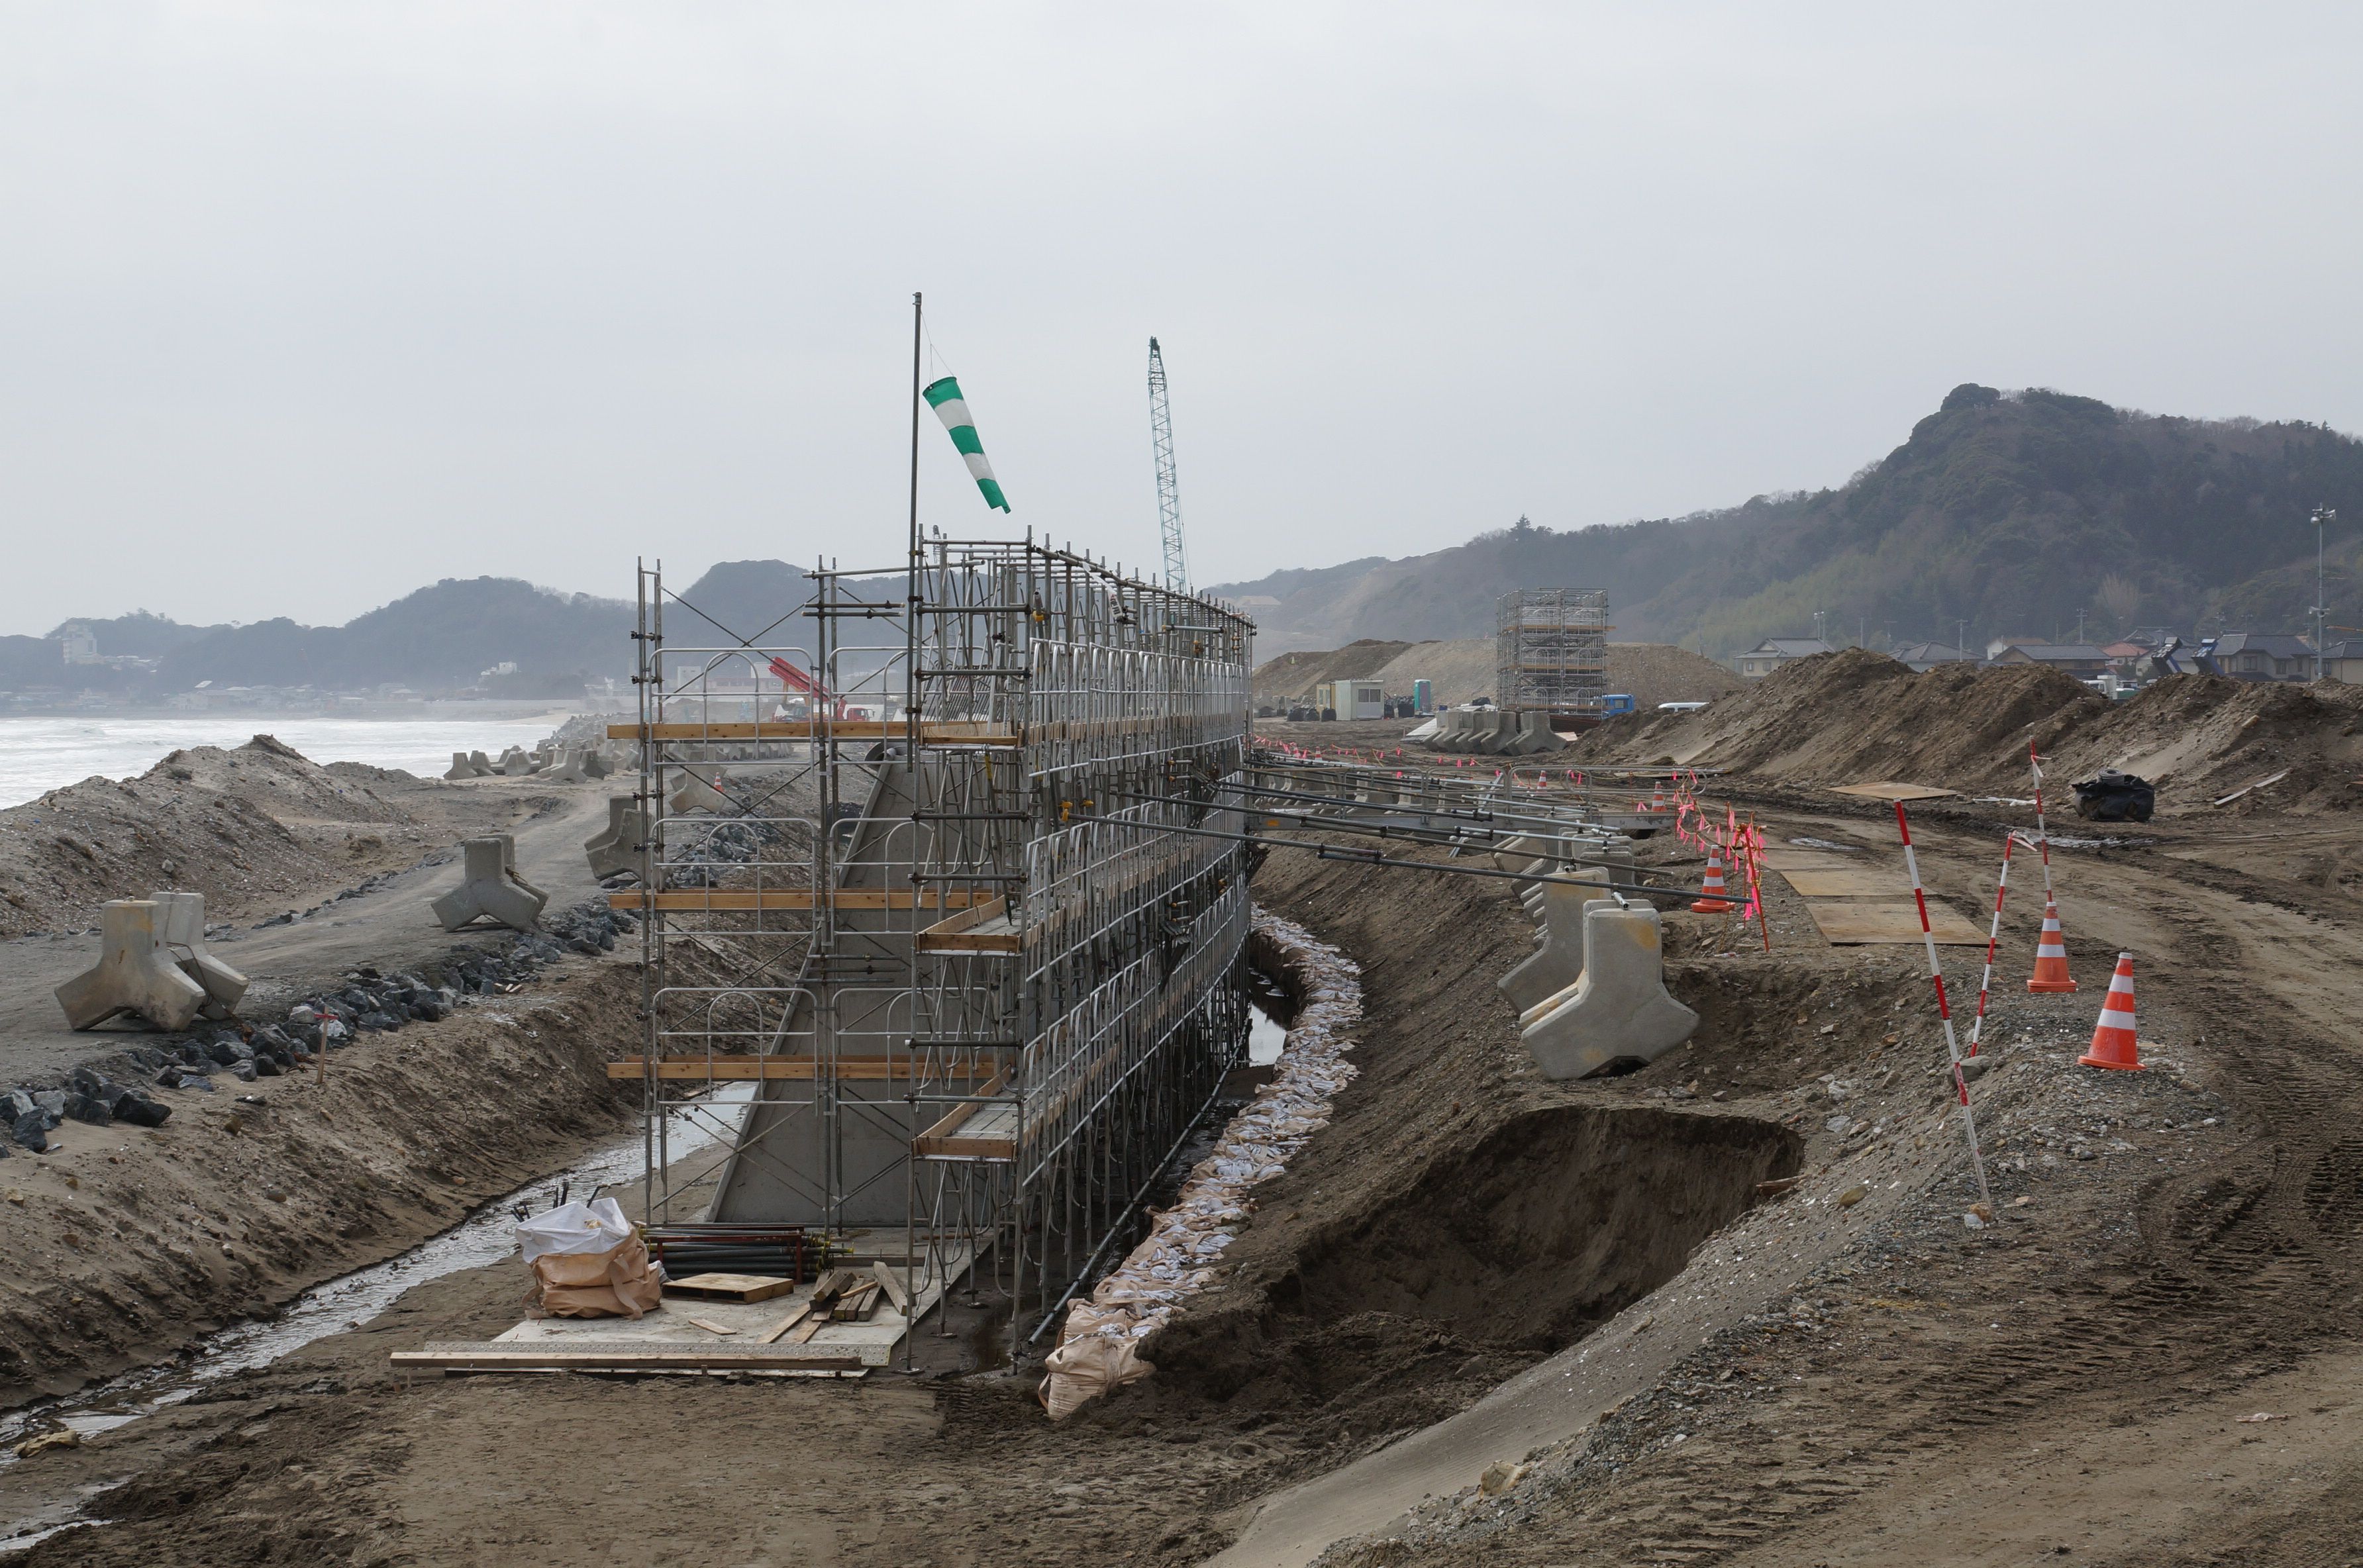 17 防潮堤のかさ上げ工事が施工(平成27年2月、いわきジャーナル撮影)